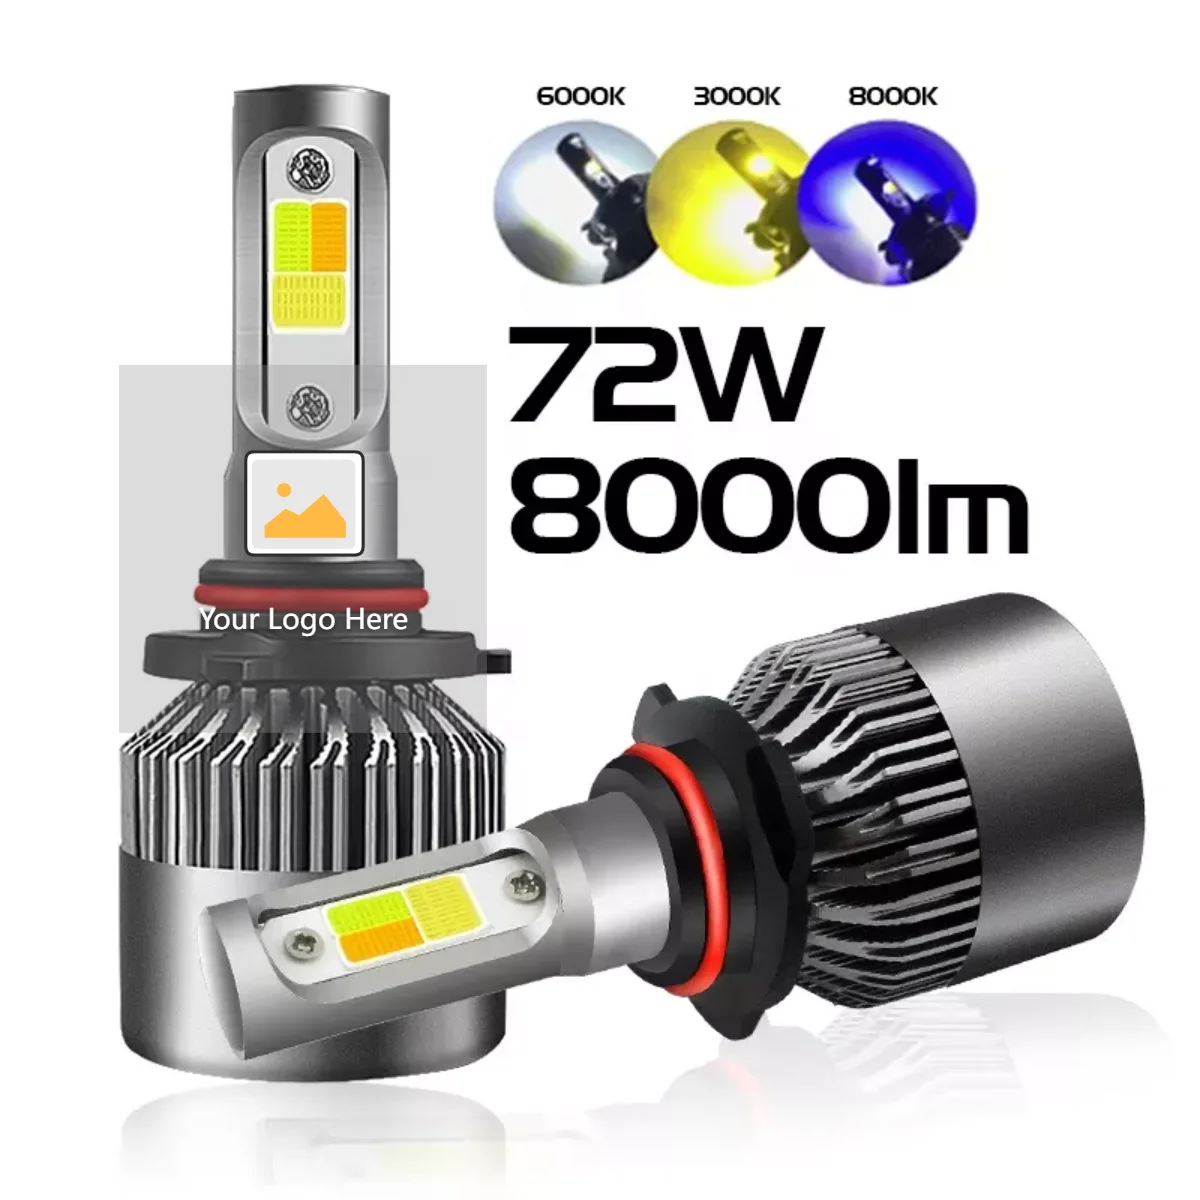 Ruimin 1PC COB 72W 8000LM Car Headlight Kit Turbo Light Bulbs 6000K White Lamp Size 9005 